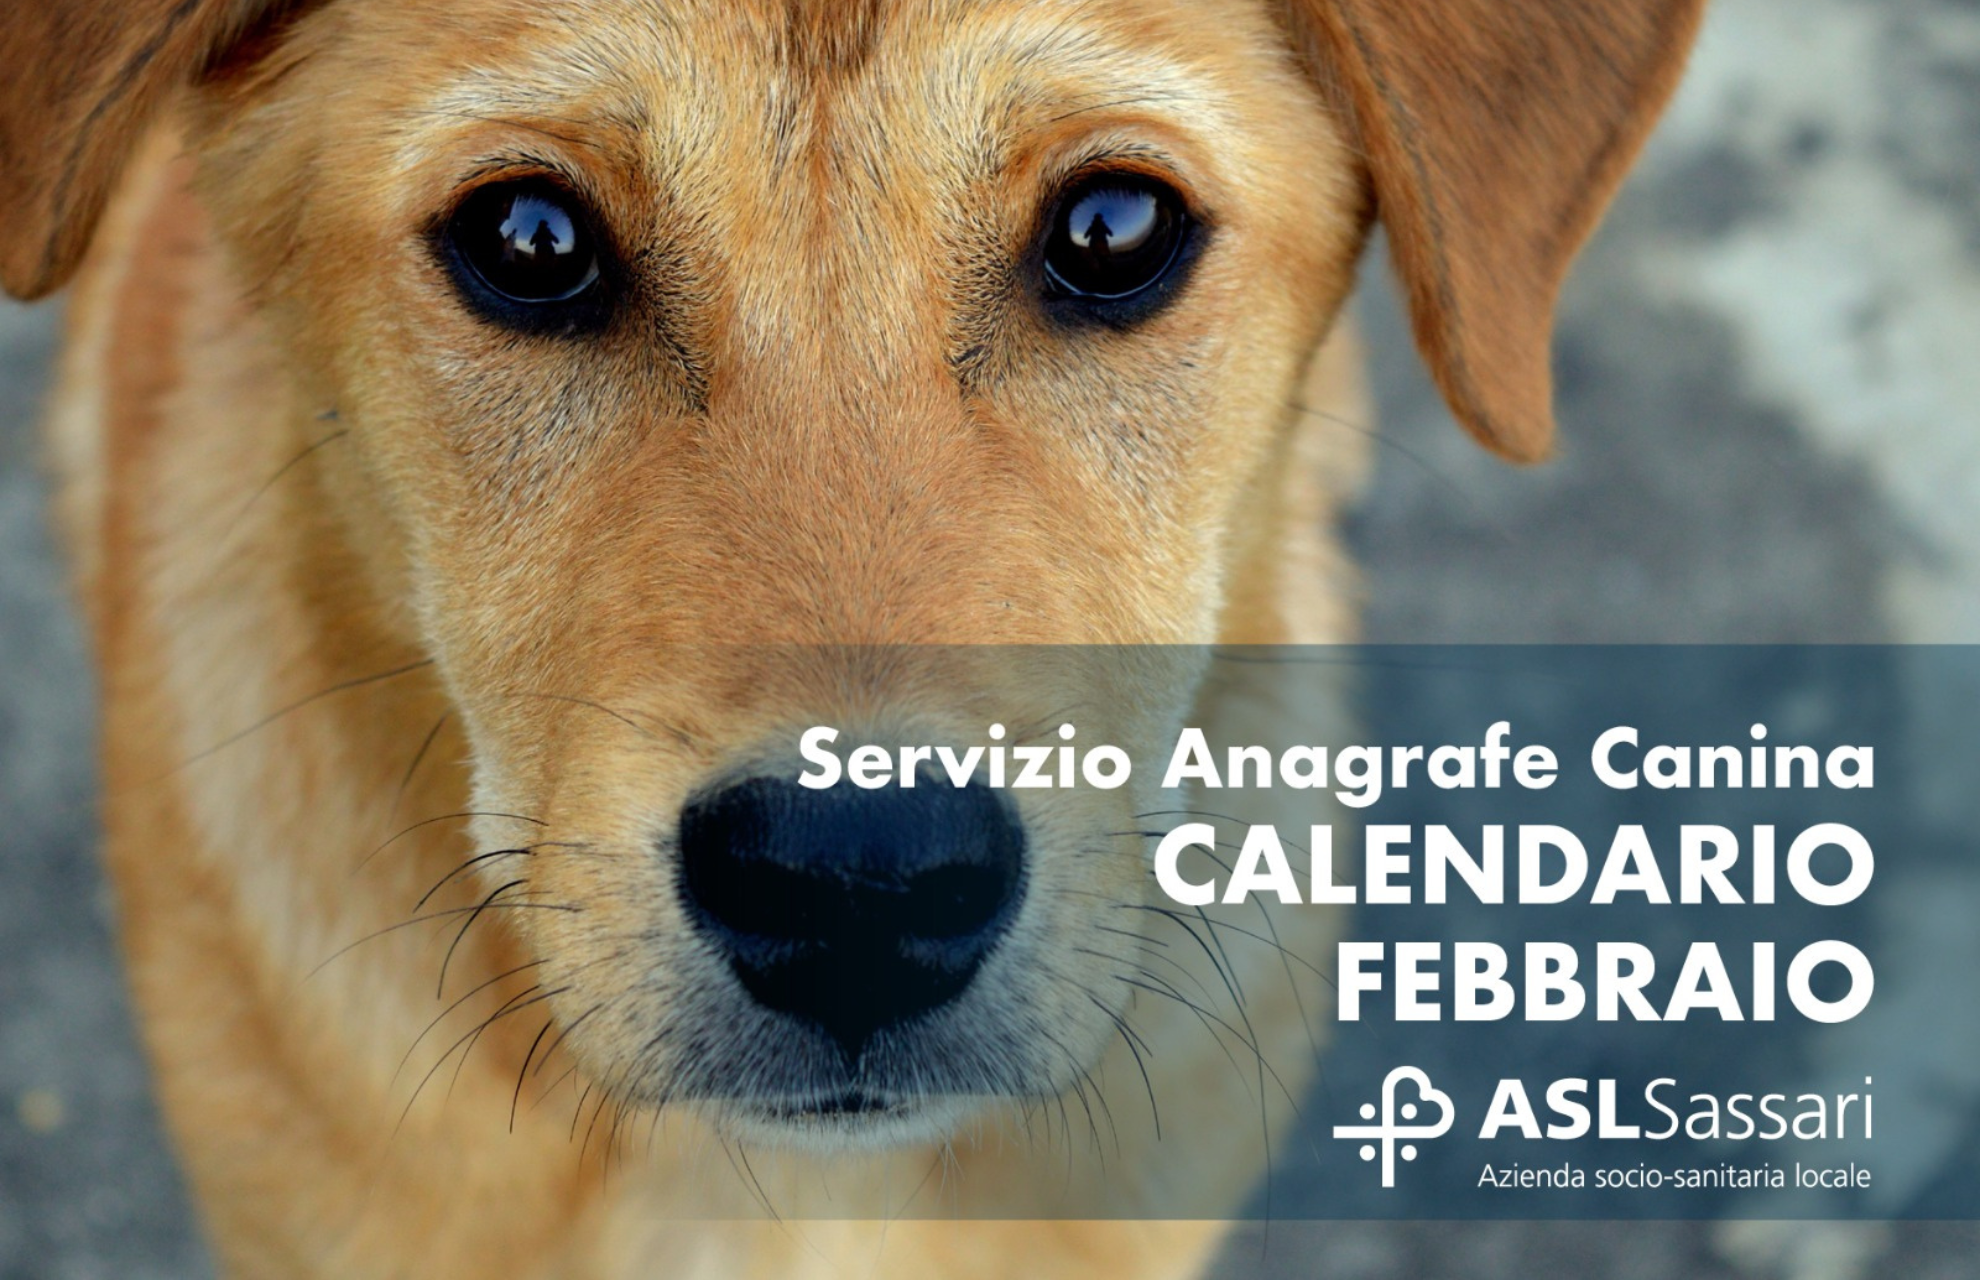 Anagrafe canina: il calendario del mese di febbraio